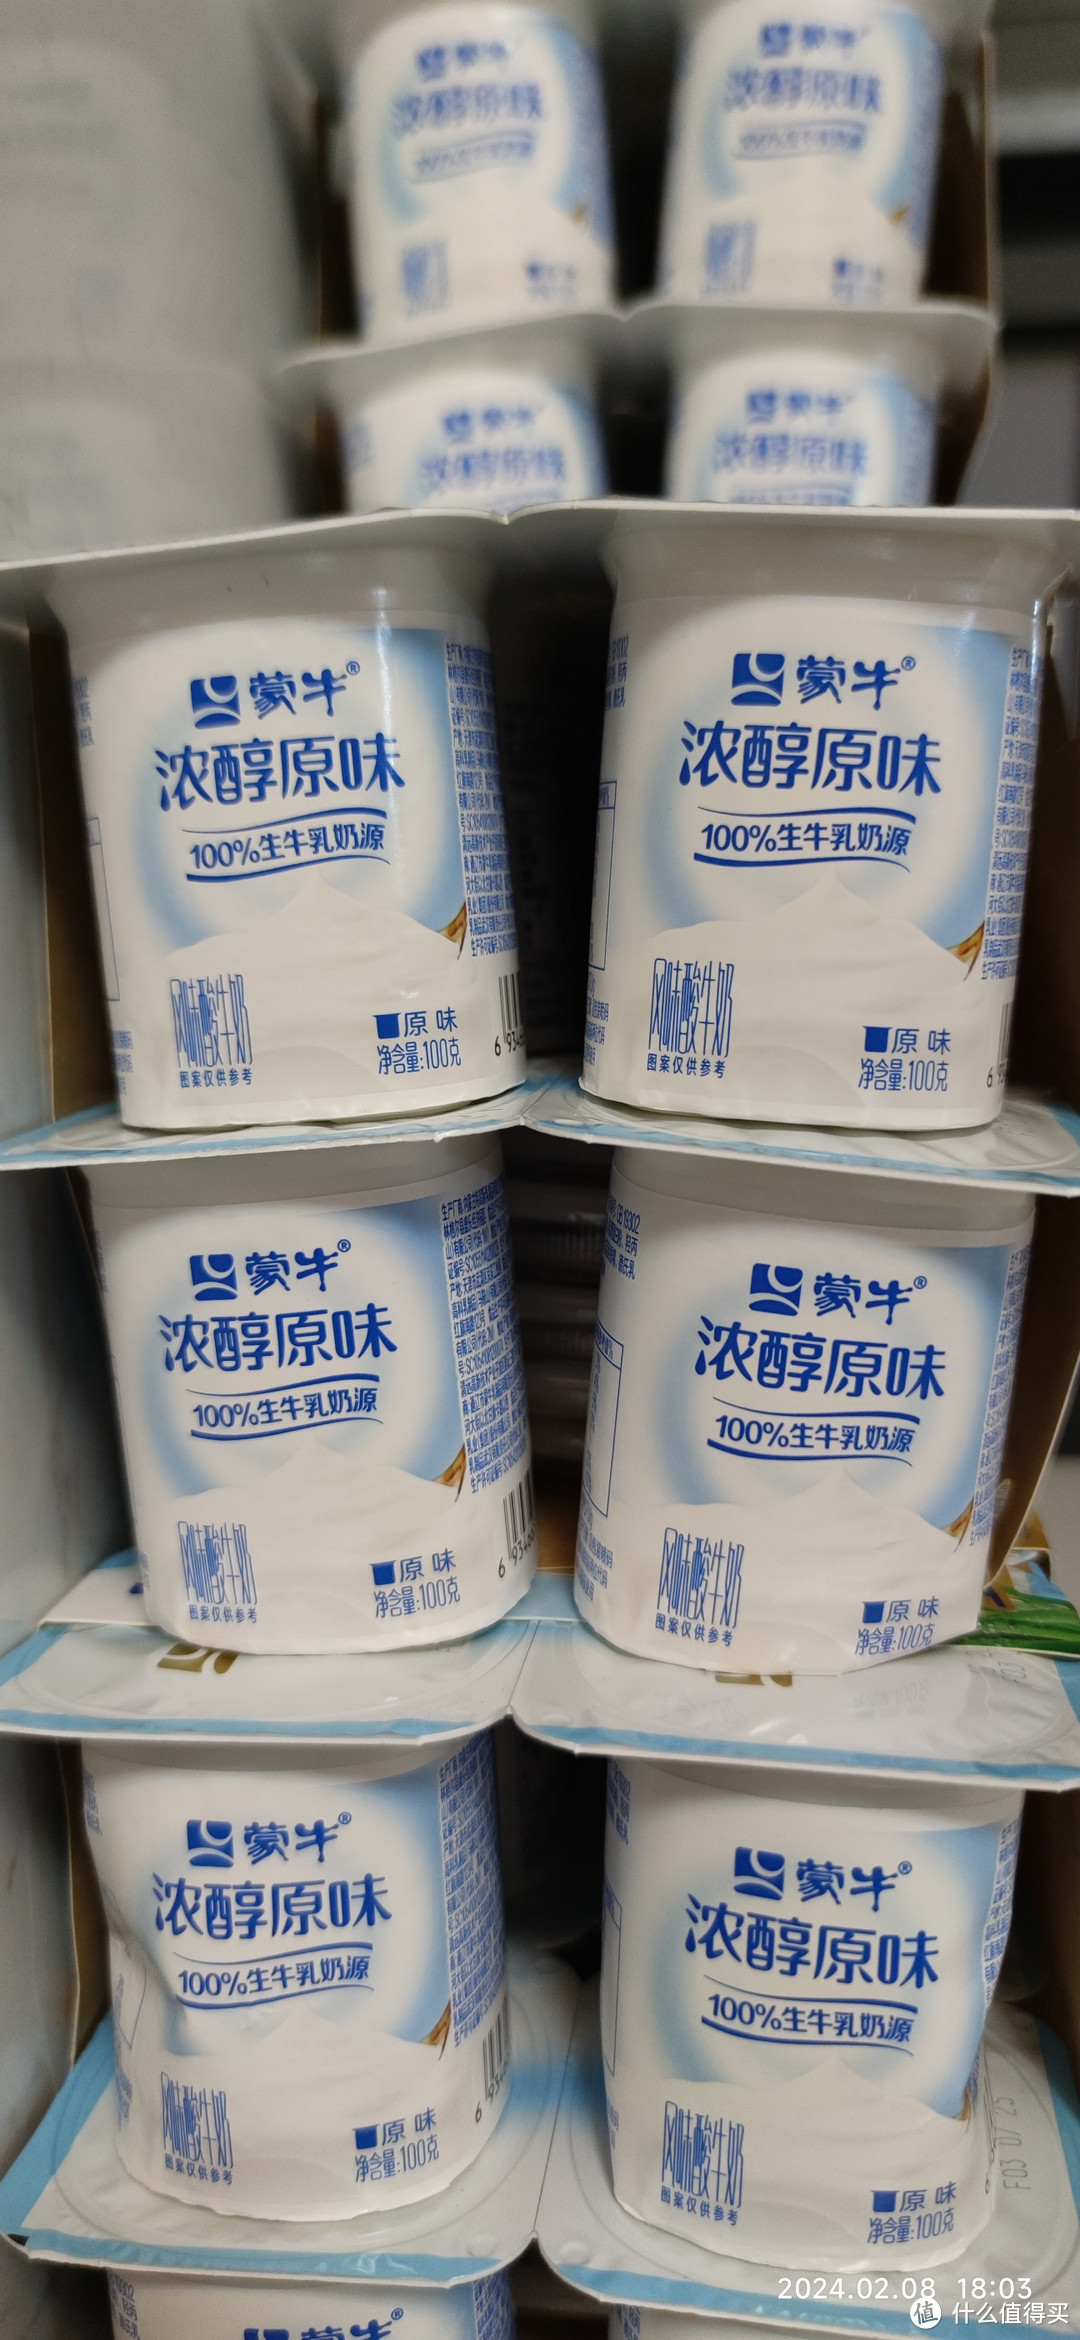 54元80盒的蒙牛浓醇原味杯装酸奶，日期很新鲜，现在还能买。